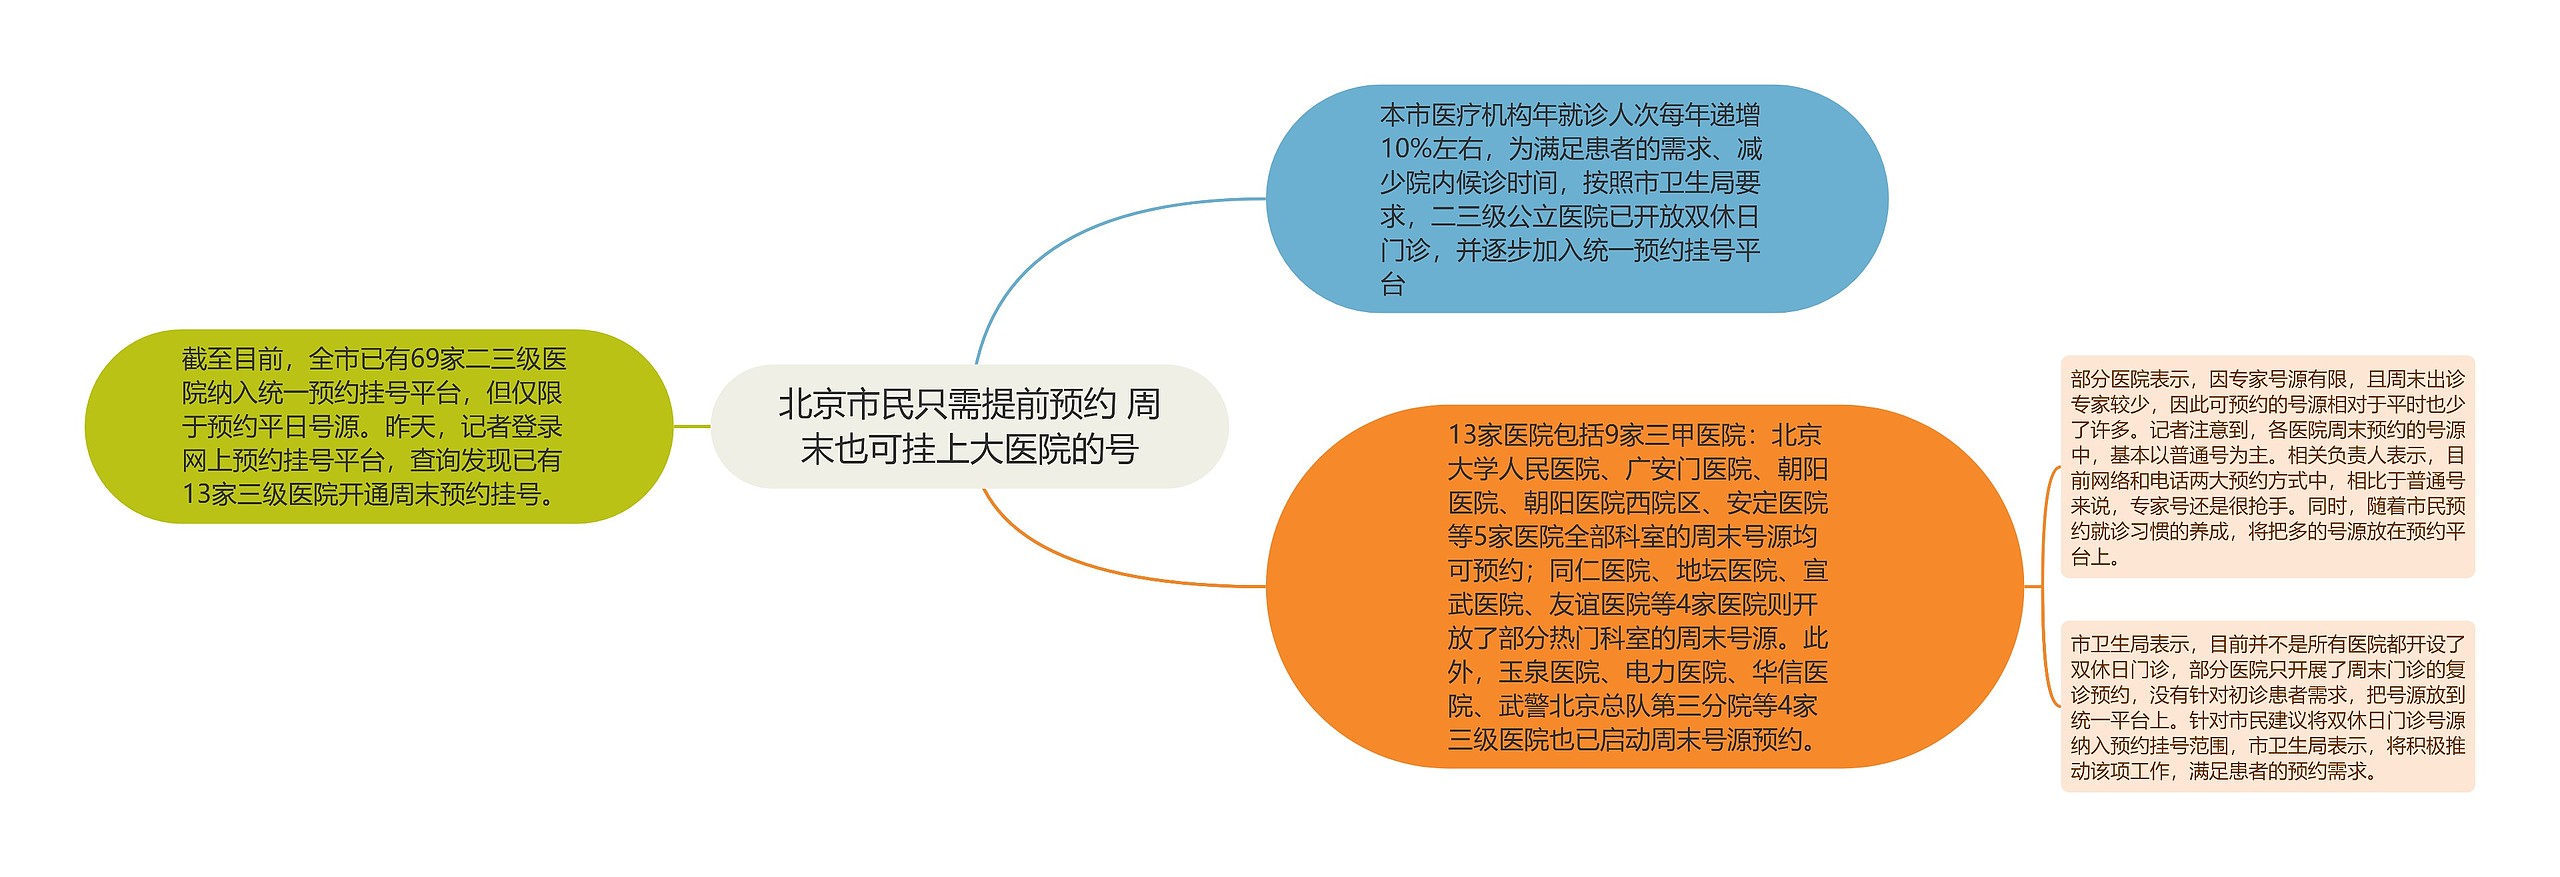 北京市民只需提前预约 周末也可挂上大医院的号思维导图